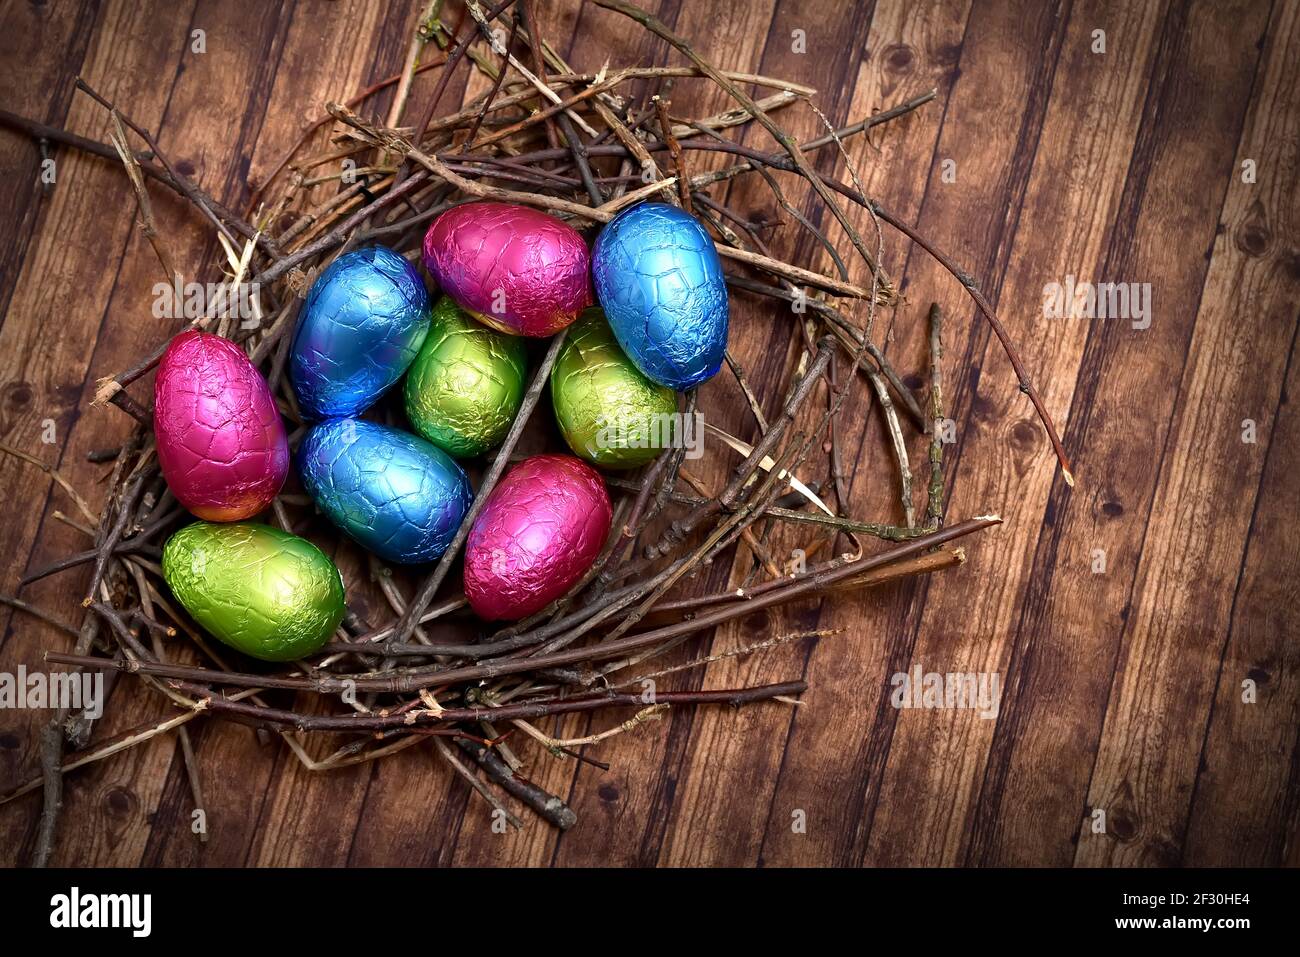 Des œufs de pâques colorés enveloppés de feuilles dans du rose, du vert, du bleu et du jaune dans un nid naturel fait de bâtons et de brindilles, contre un dos en bois brun multigrain Banque D'Images